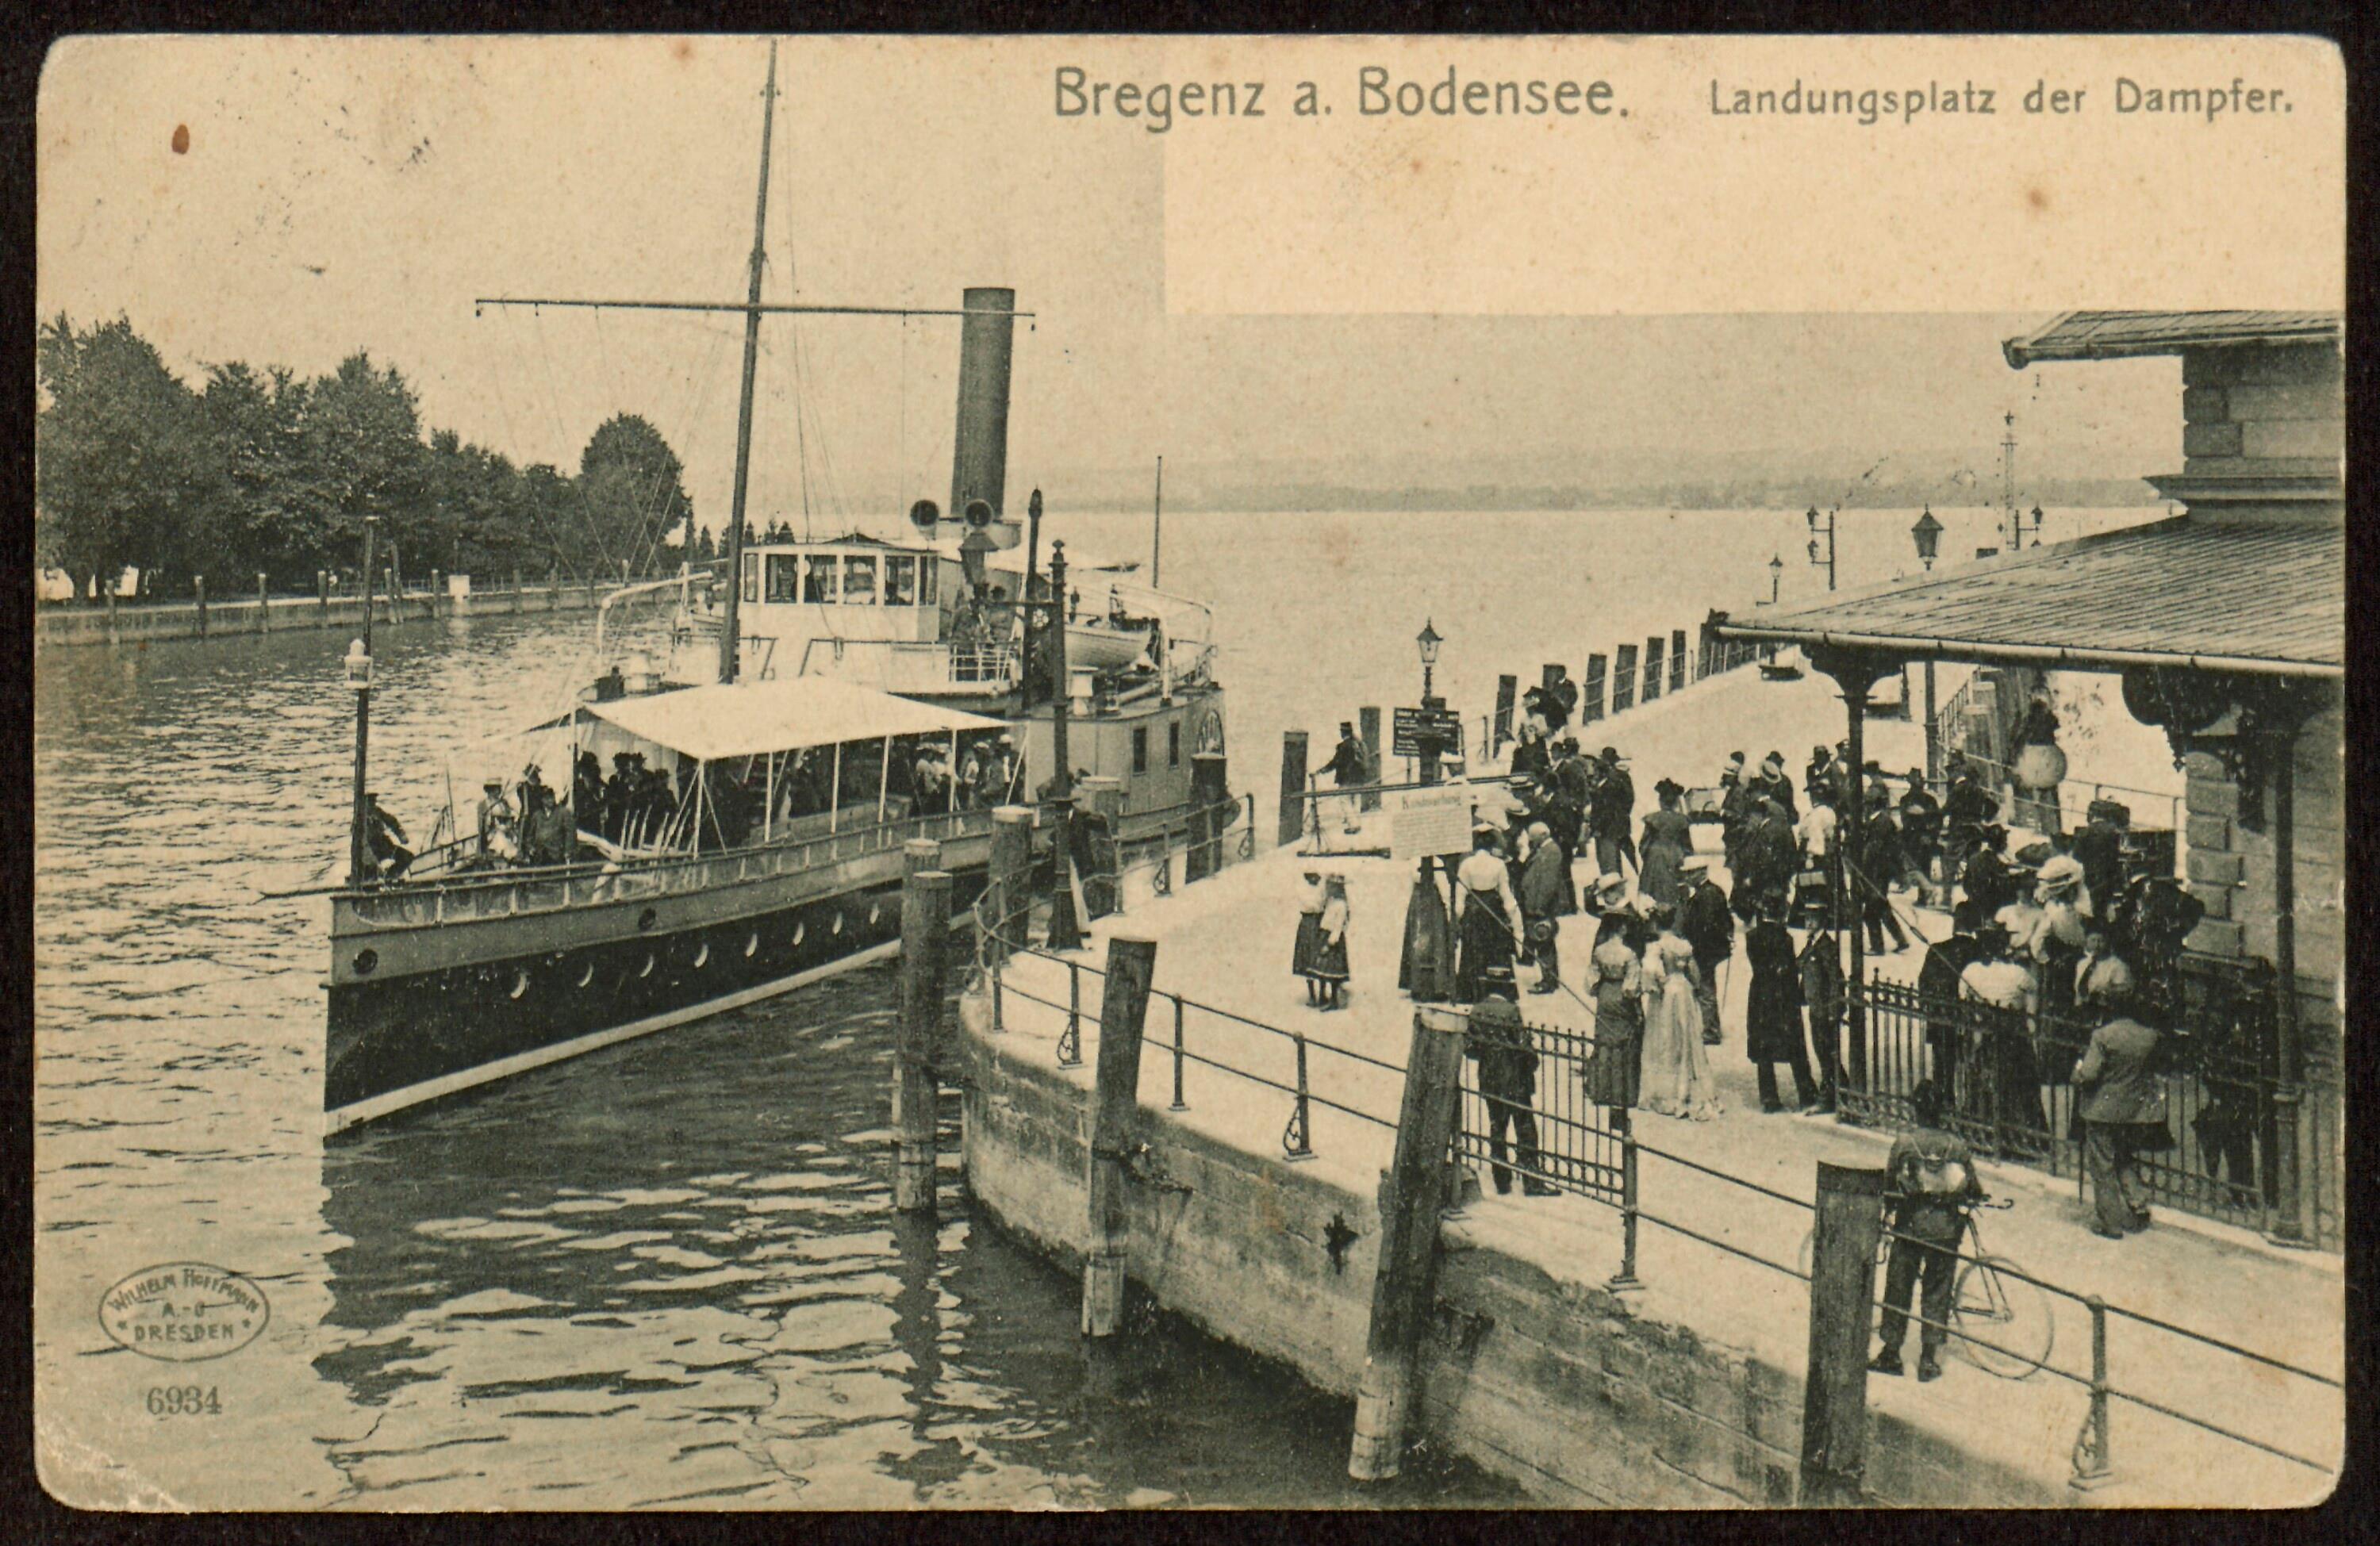 Bregenz a. Bodensee></div>


    <hr>
    <div class=